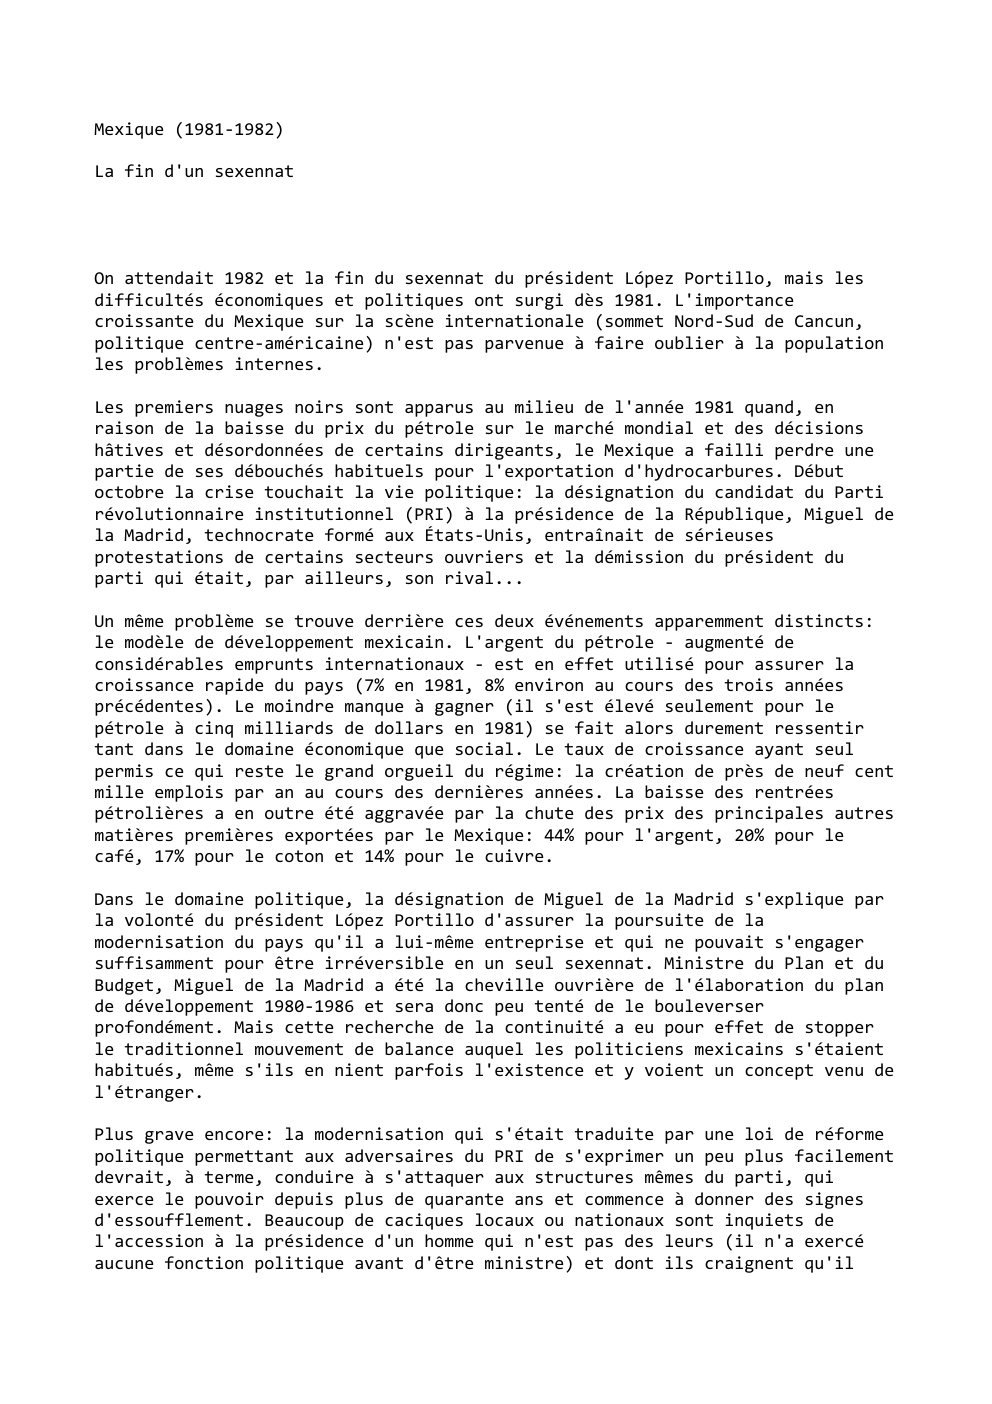 Prévisualisation du document Mexique (1981-1982)
La fin d'un sexennat

On attendait 1982 et la fin du sexennat du président López Portillo, mais les...